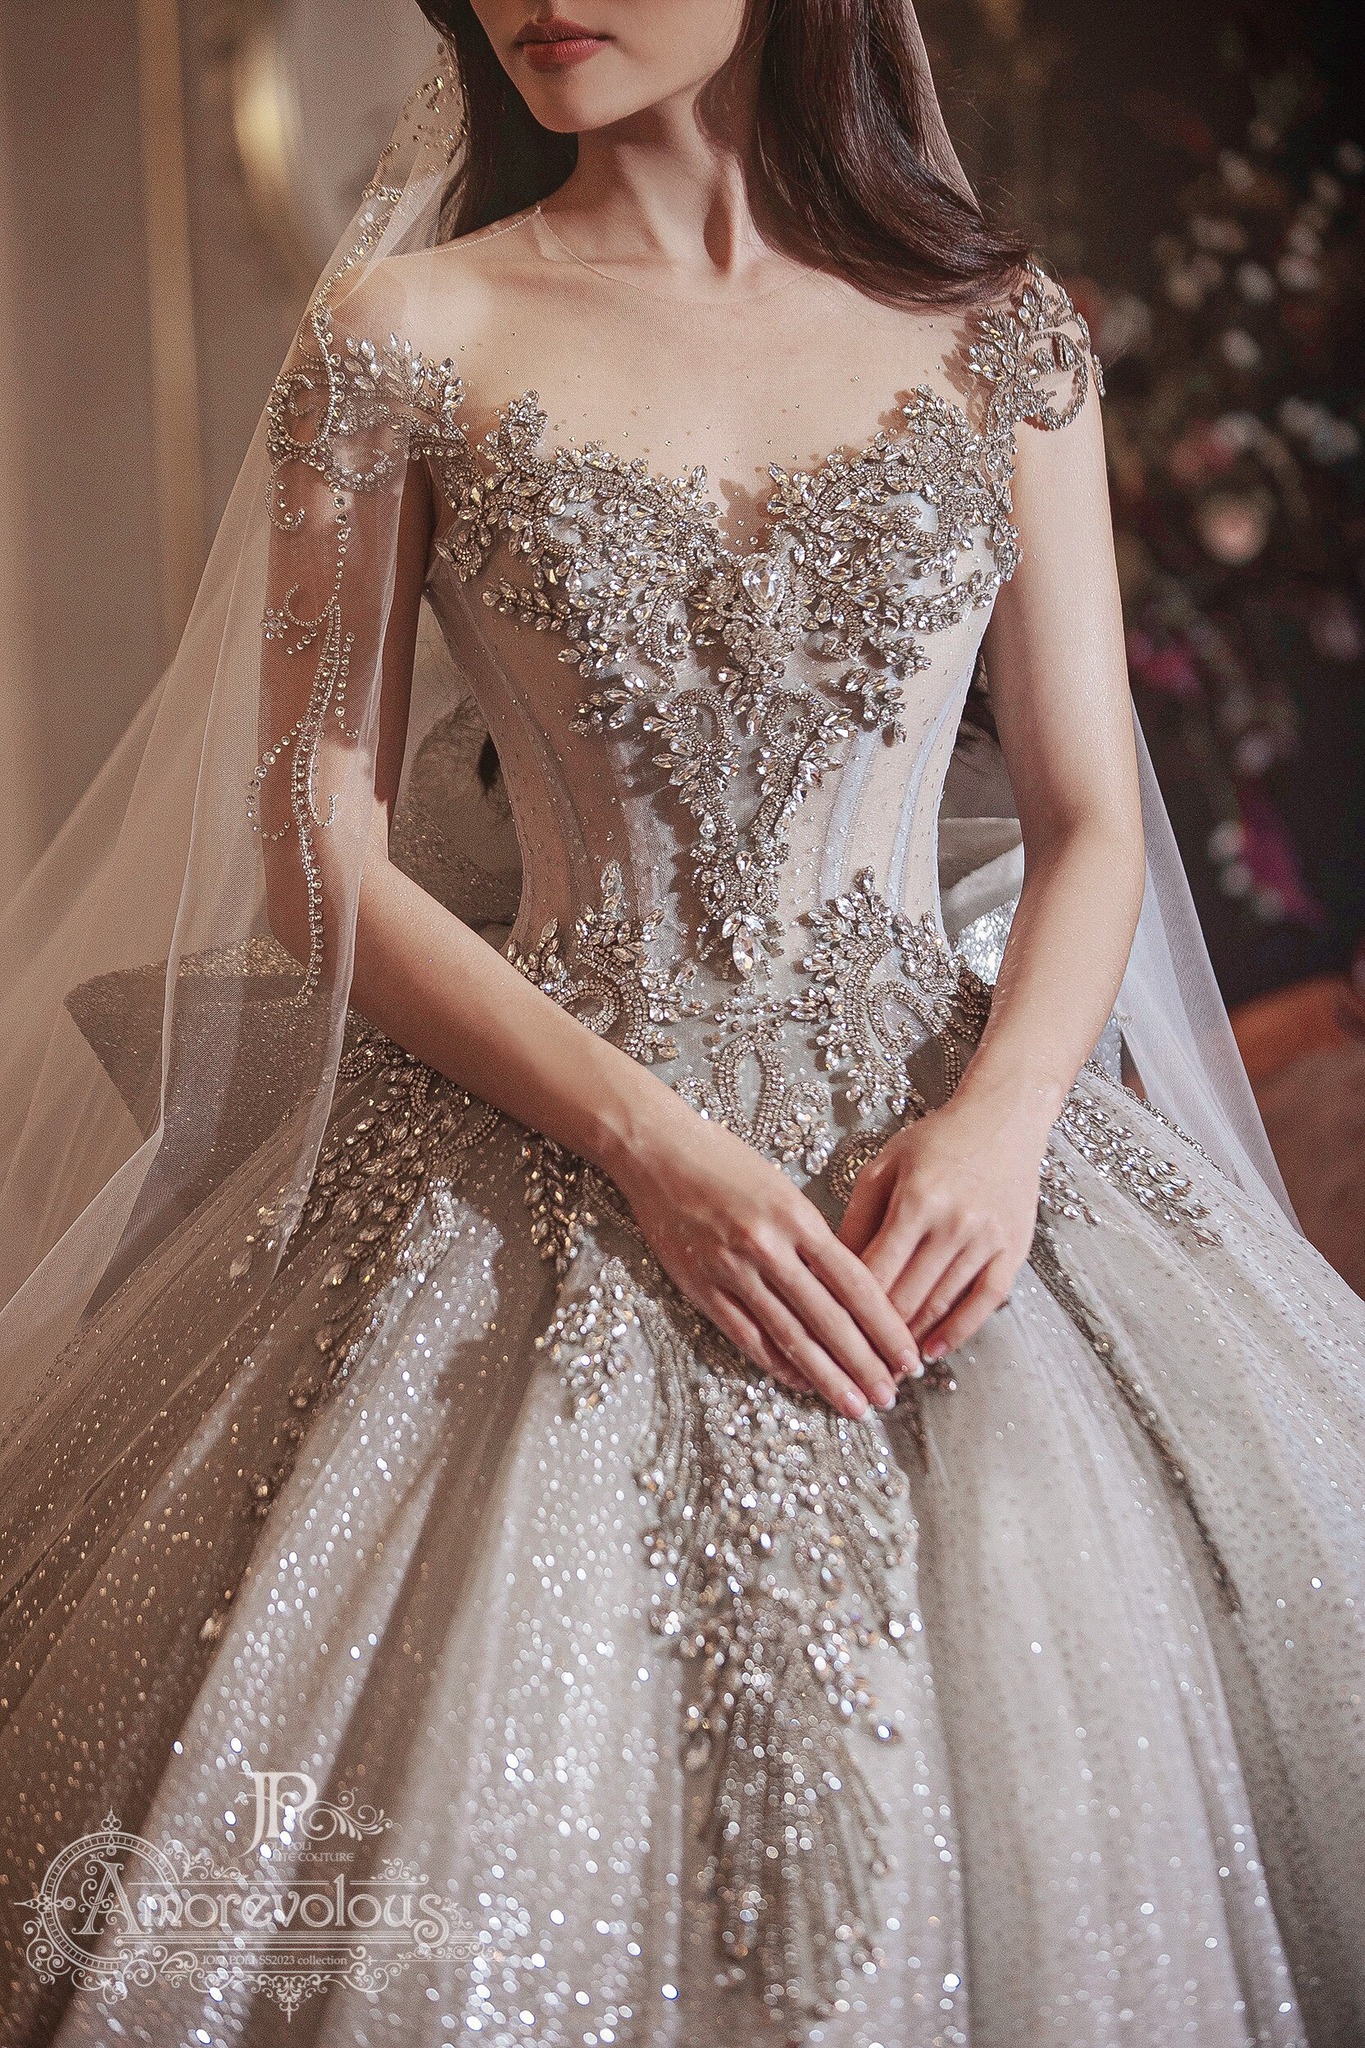 23 Mẫu váy cưới đẹp sang trọng nhất khiến nàng nổi bật